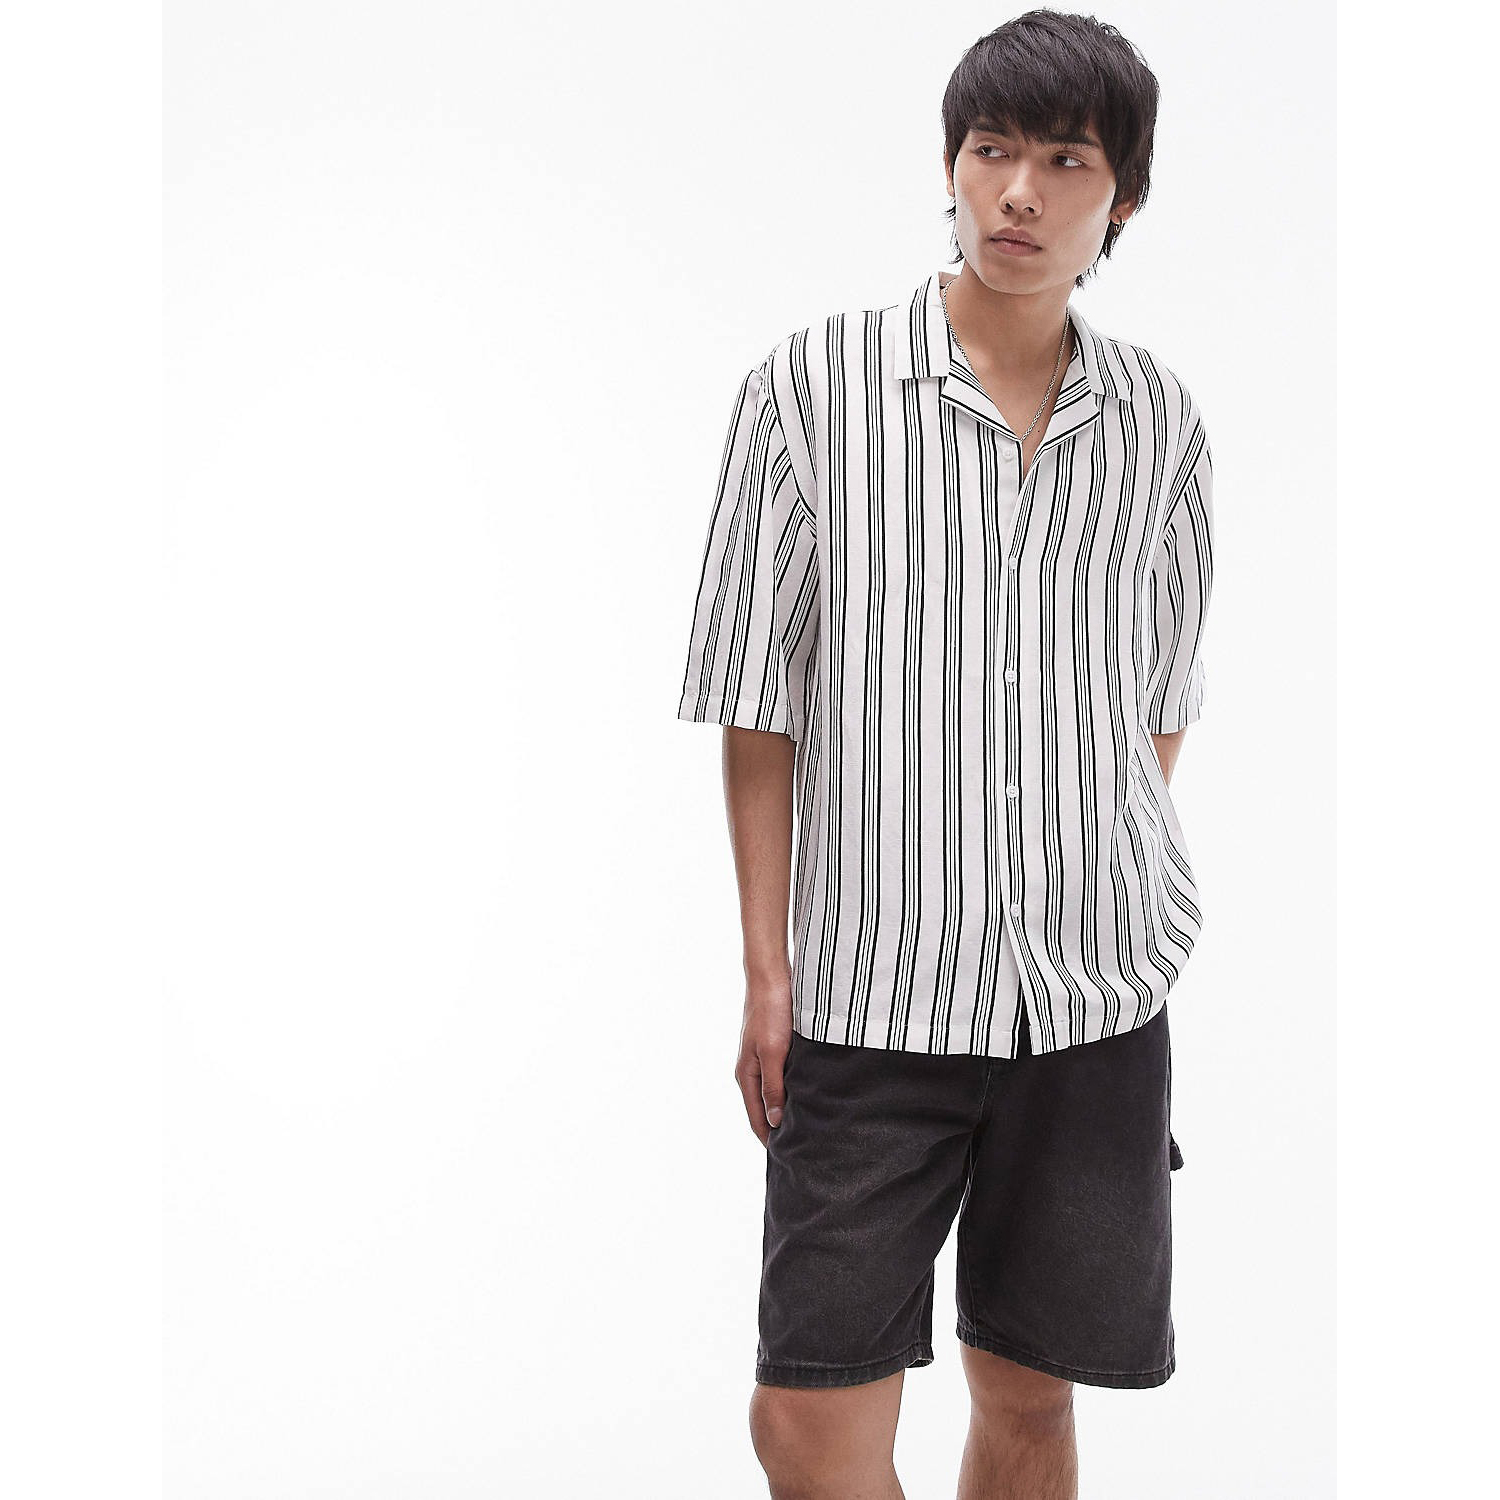 Рубашка Topman Short Sleeve Relaxed Linen Mix Stripe, белый рубашка мужская с принтом кокосовых деревьев модный топ в гавайскую полоску пляжная рубашка свободного кроя повседневная одежда с коротк